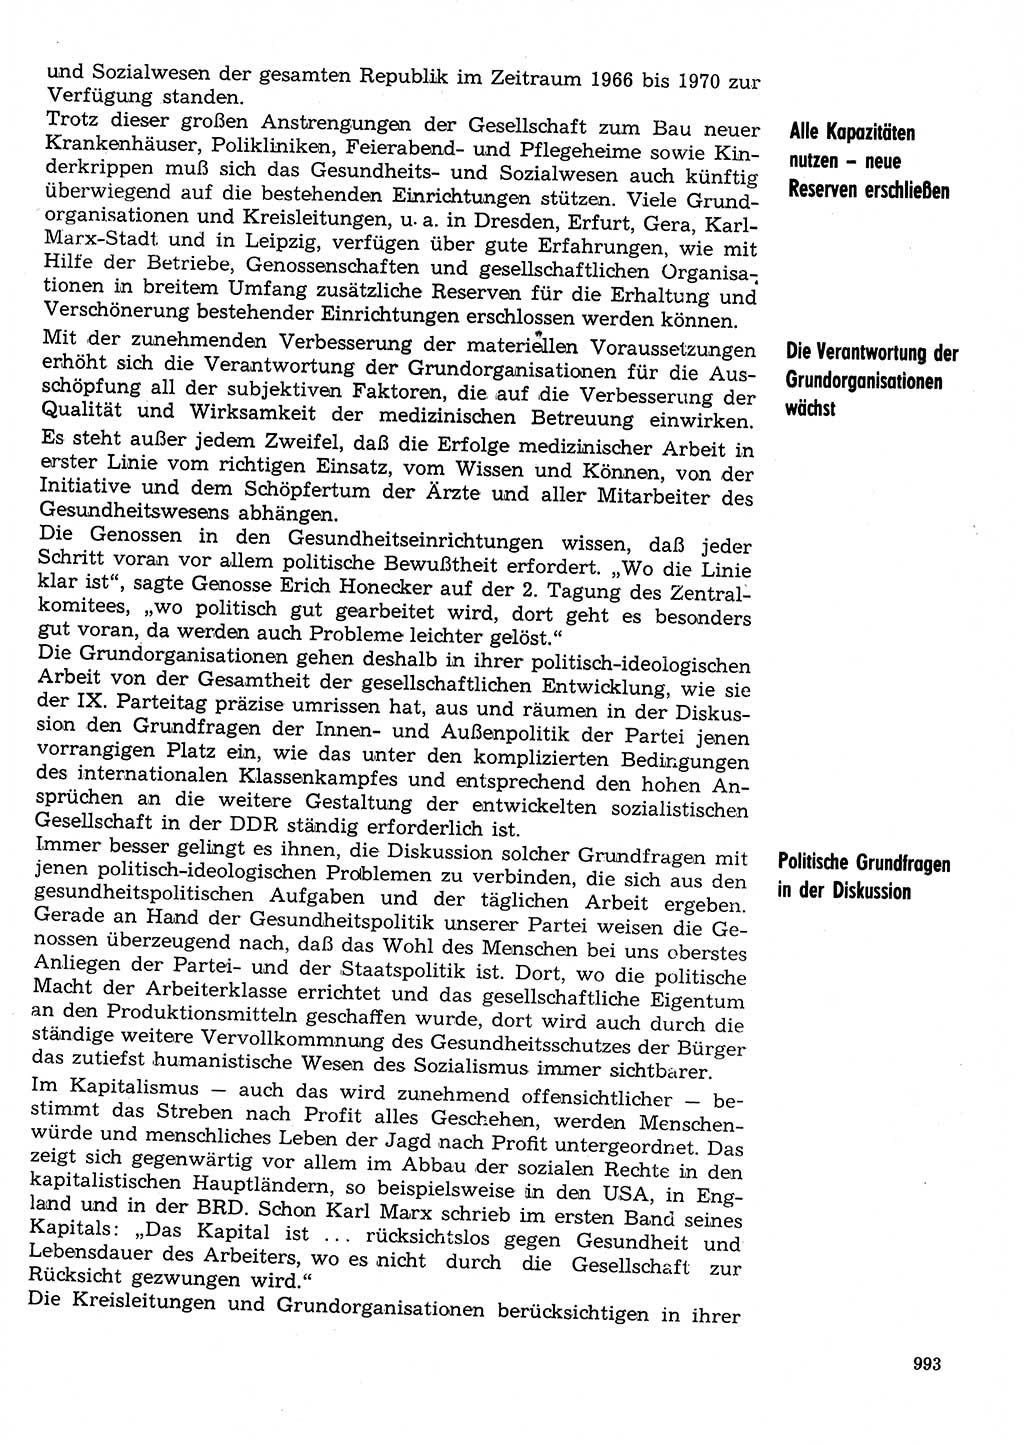 Neuer Weg (NW), Organ des Zentralkomitees (ZK) der SED (Sozialistische Einheitspartei Deutschlands) für Fragen des Parteilebens, 31. Jahrgang [Deutsche Demokratische Republik (DDR)] 1976, Seite 993 (NW ZK SED DDR 1976, S. 993)